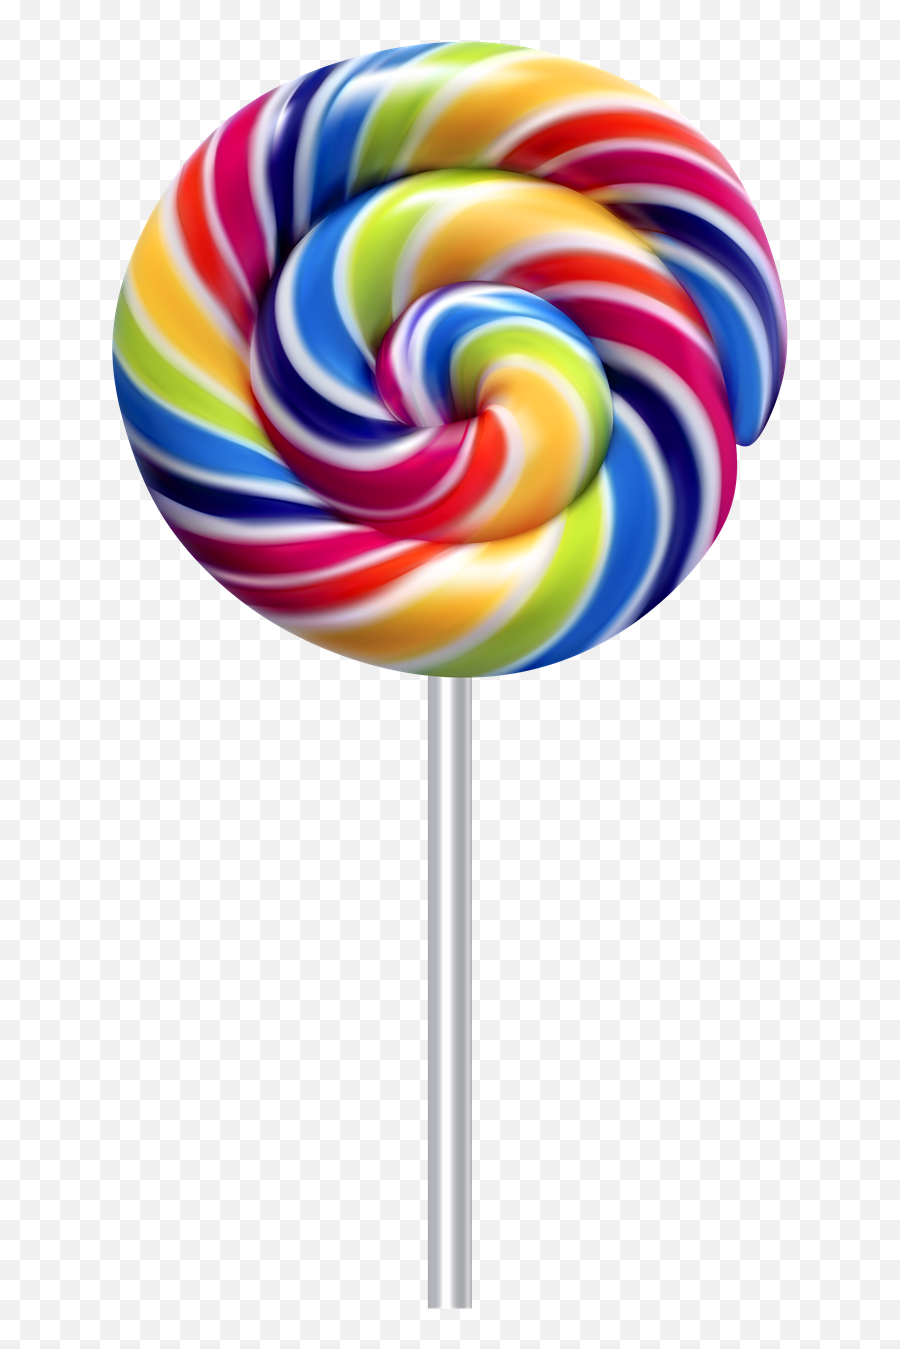 Rainbow Lollipop Png Transparent Image Arts - Transparent Background Swirl Lollipop Clipart,Transparent Rainbow Png